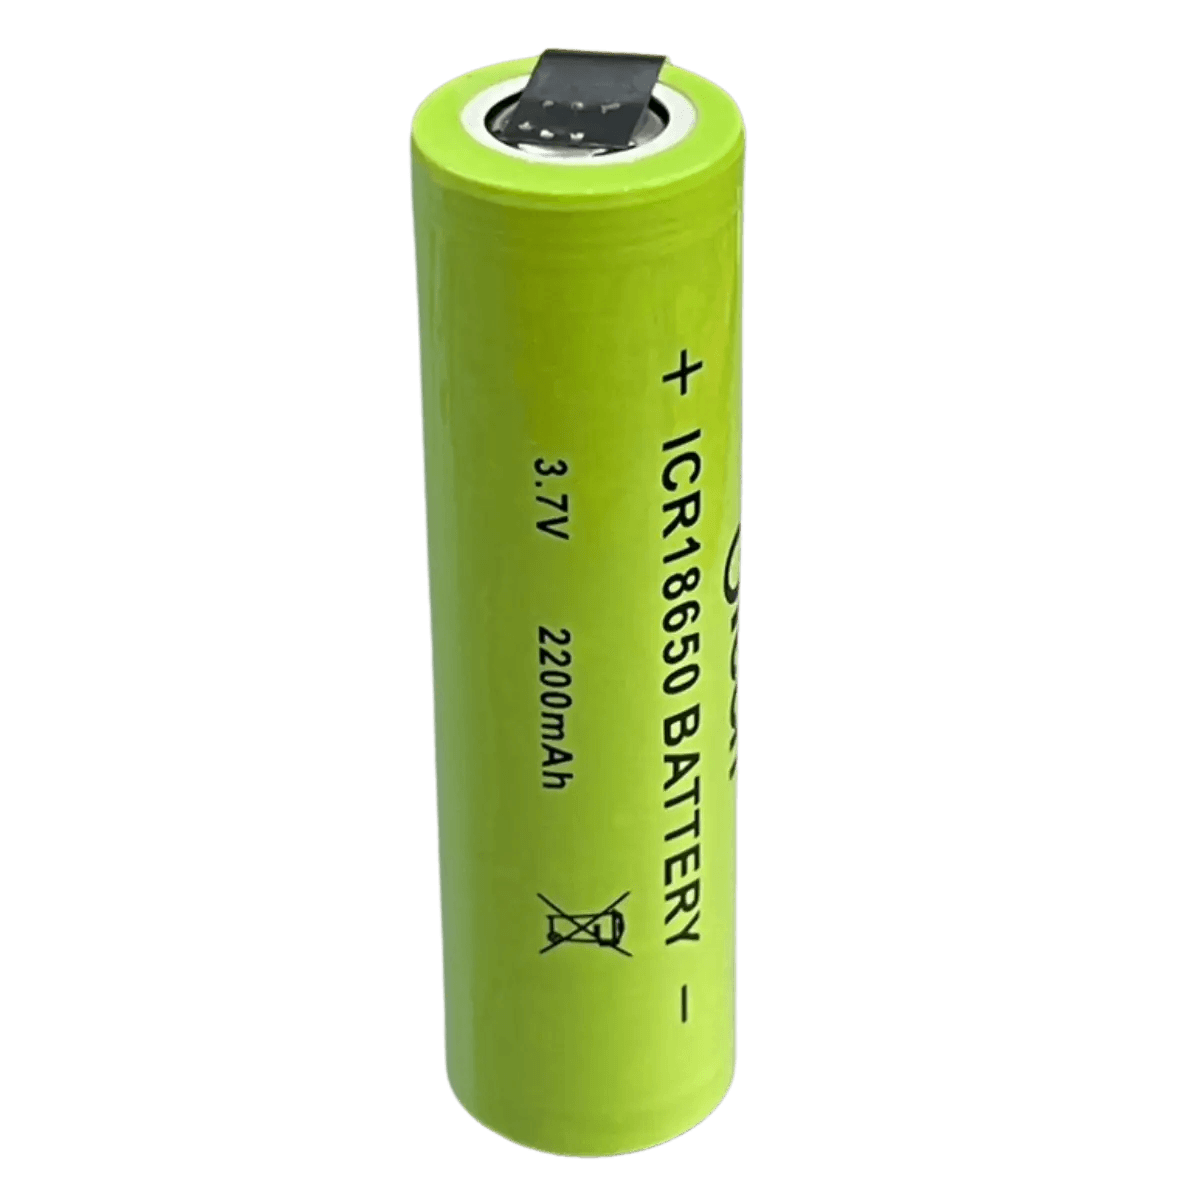 Batterie ICR18650 Li-ion 3.7V 2200mAh avec languettes à souder